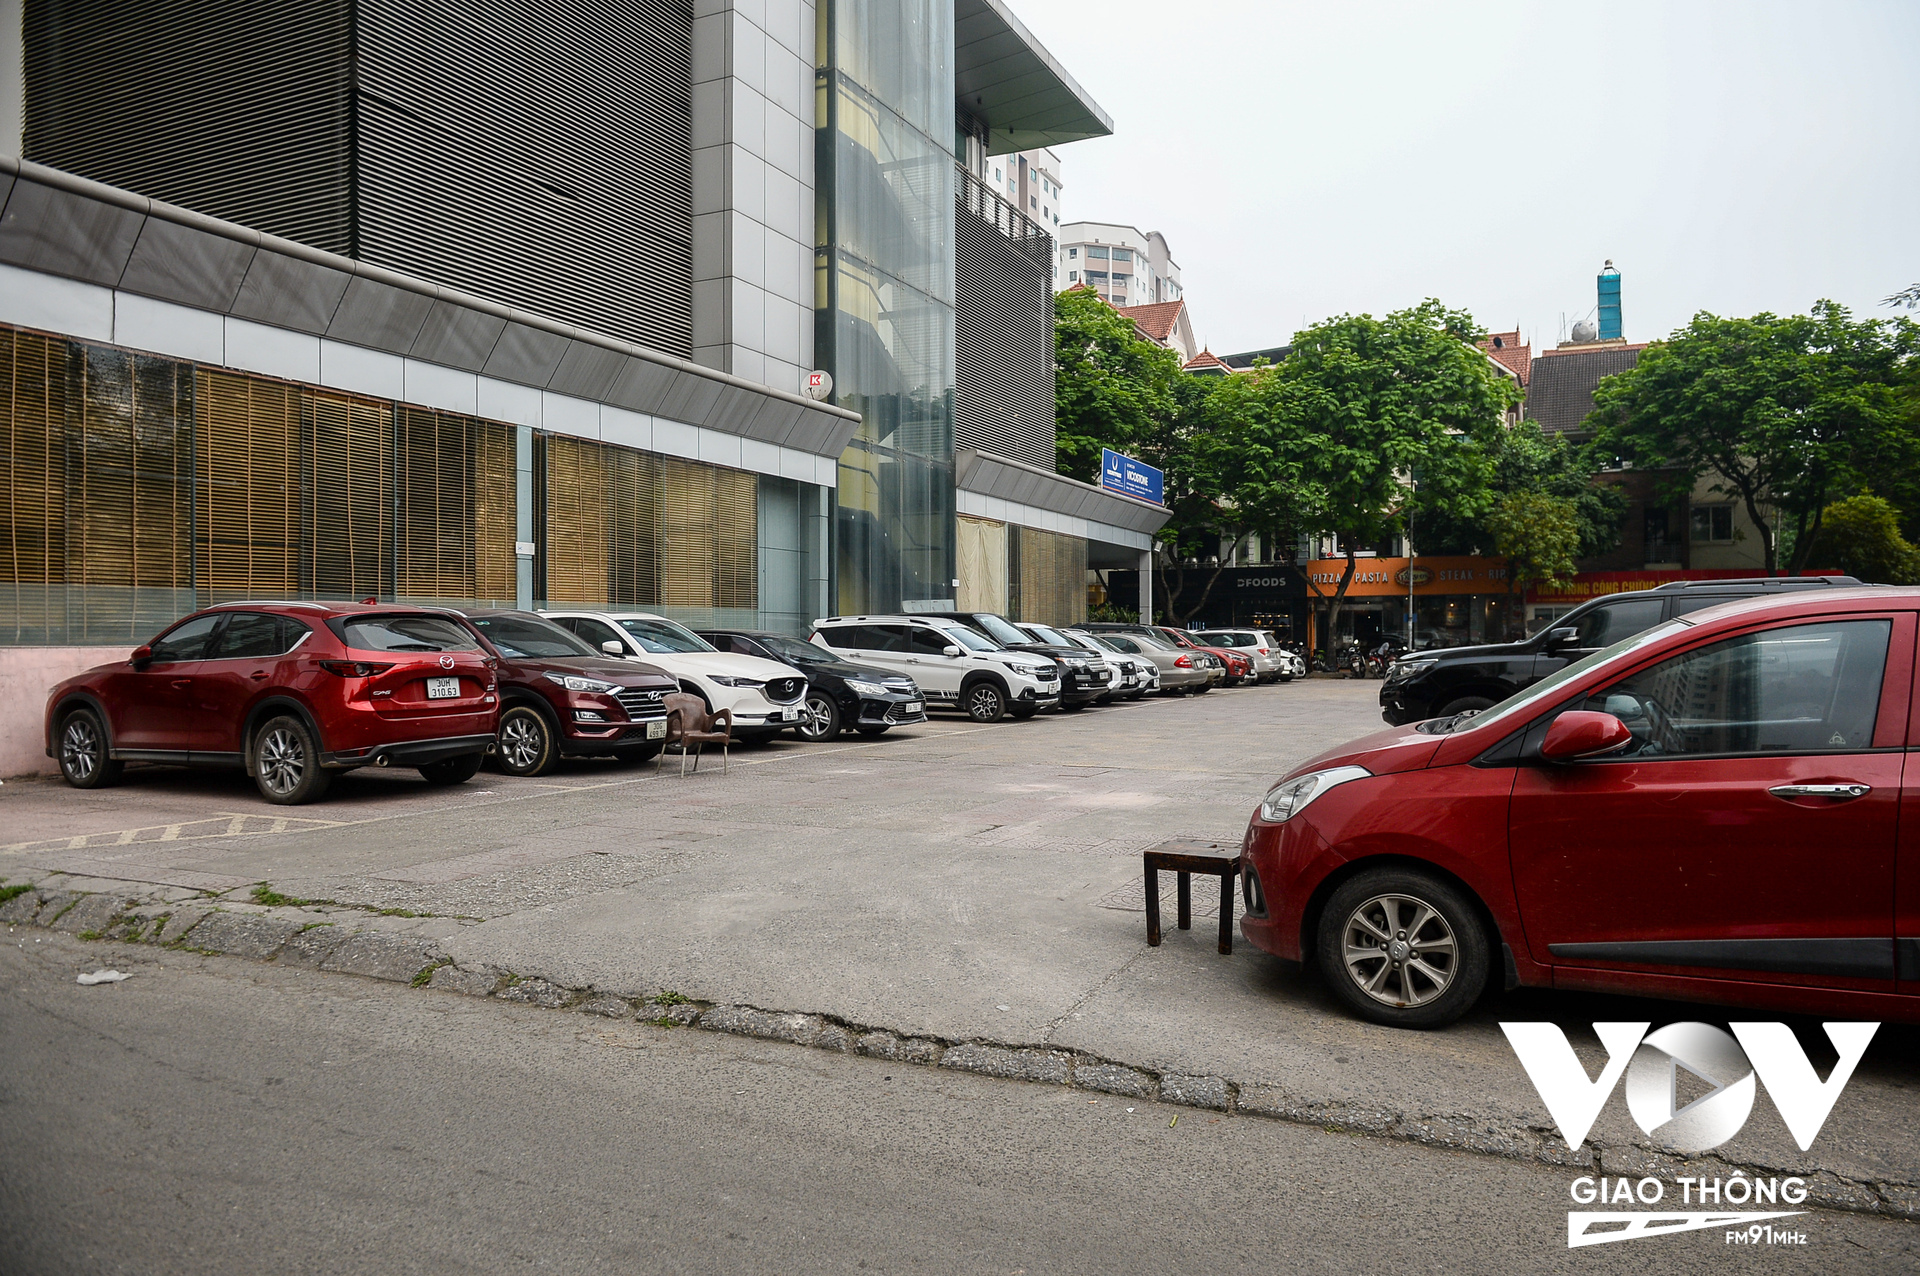 Ngay sau đó Ban Chỉ đạo 197 phường Trung Hòa đã nhắc nhở trung tâm tiếng anh trên và yêu cầu di chuyển các xe đang đỗ dưới lòng đường. Ngoài khu 17T, ở đằng sau tòa nhà 34T, khu đô thị Trung Hòa- Nhân Chính, tình trạng trên cũng diễn ra tương tự.